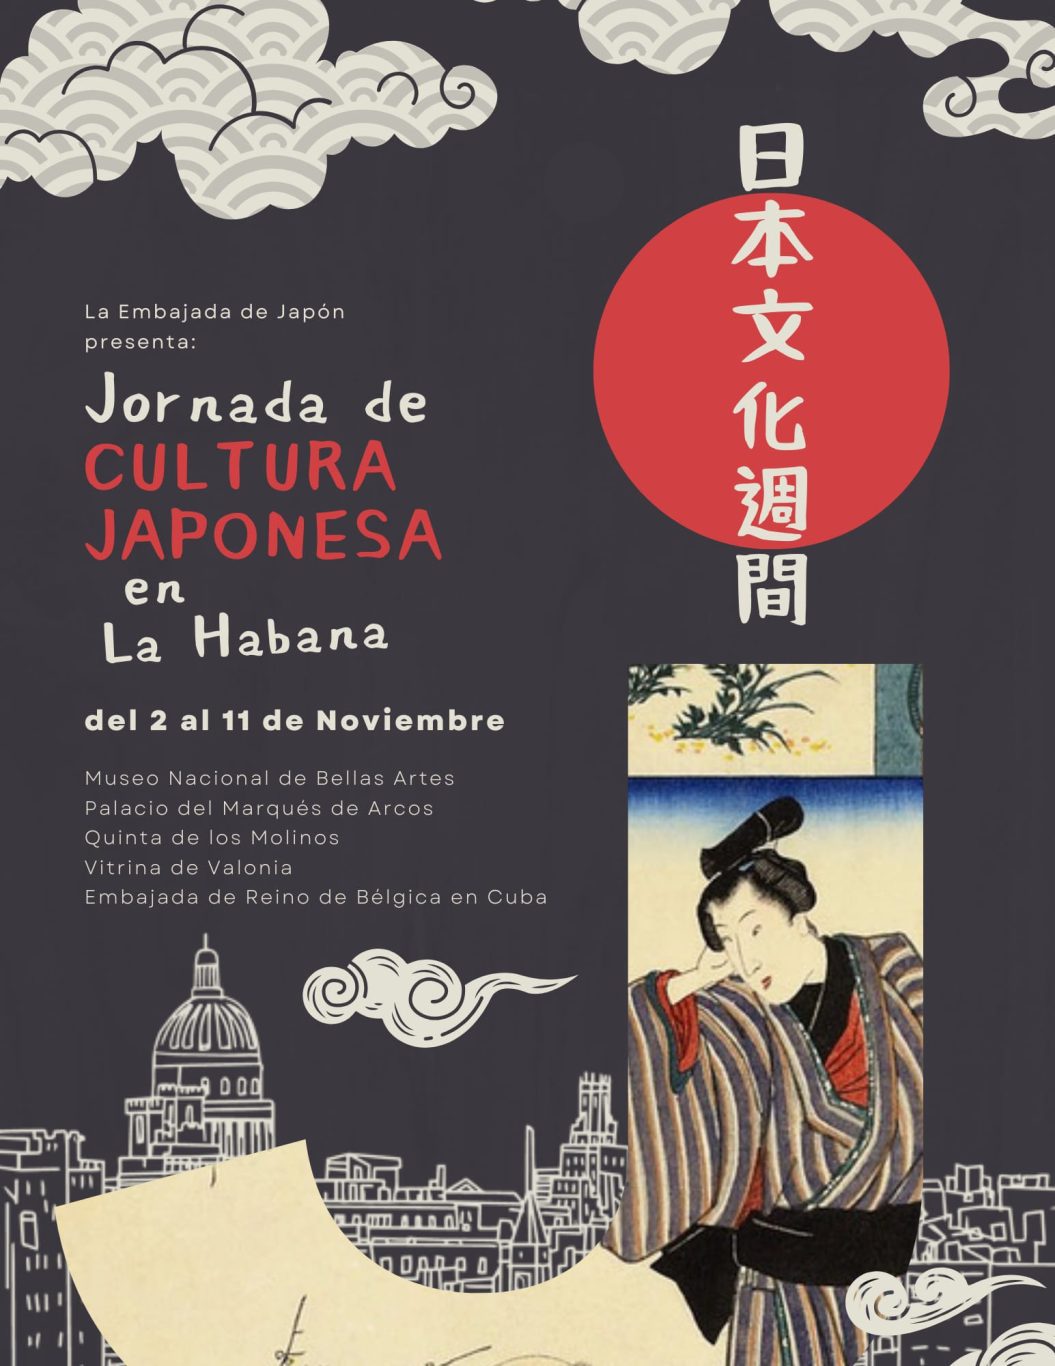 Jornada de cultura japonesa en la habana